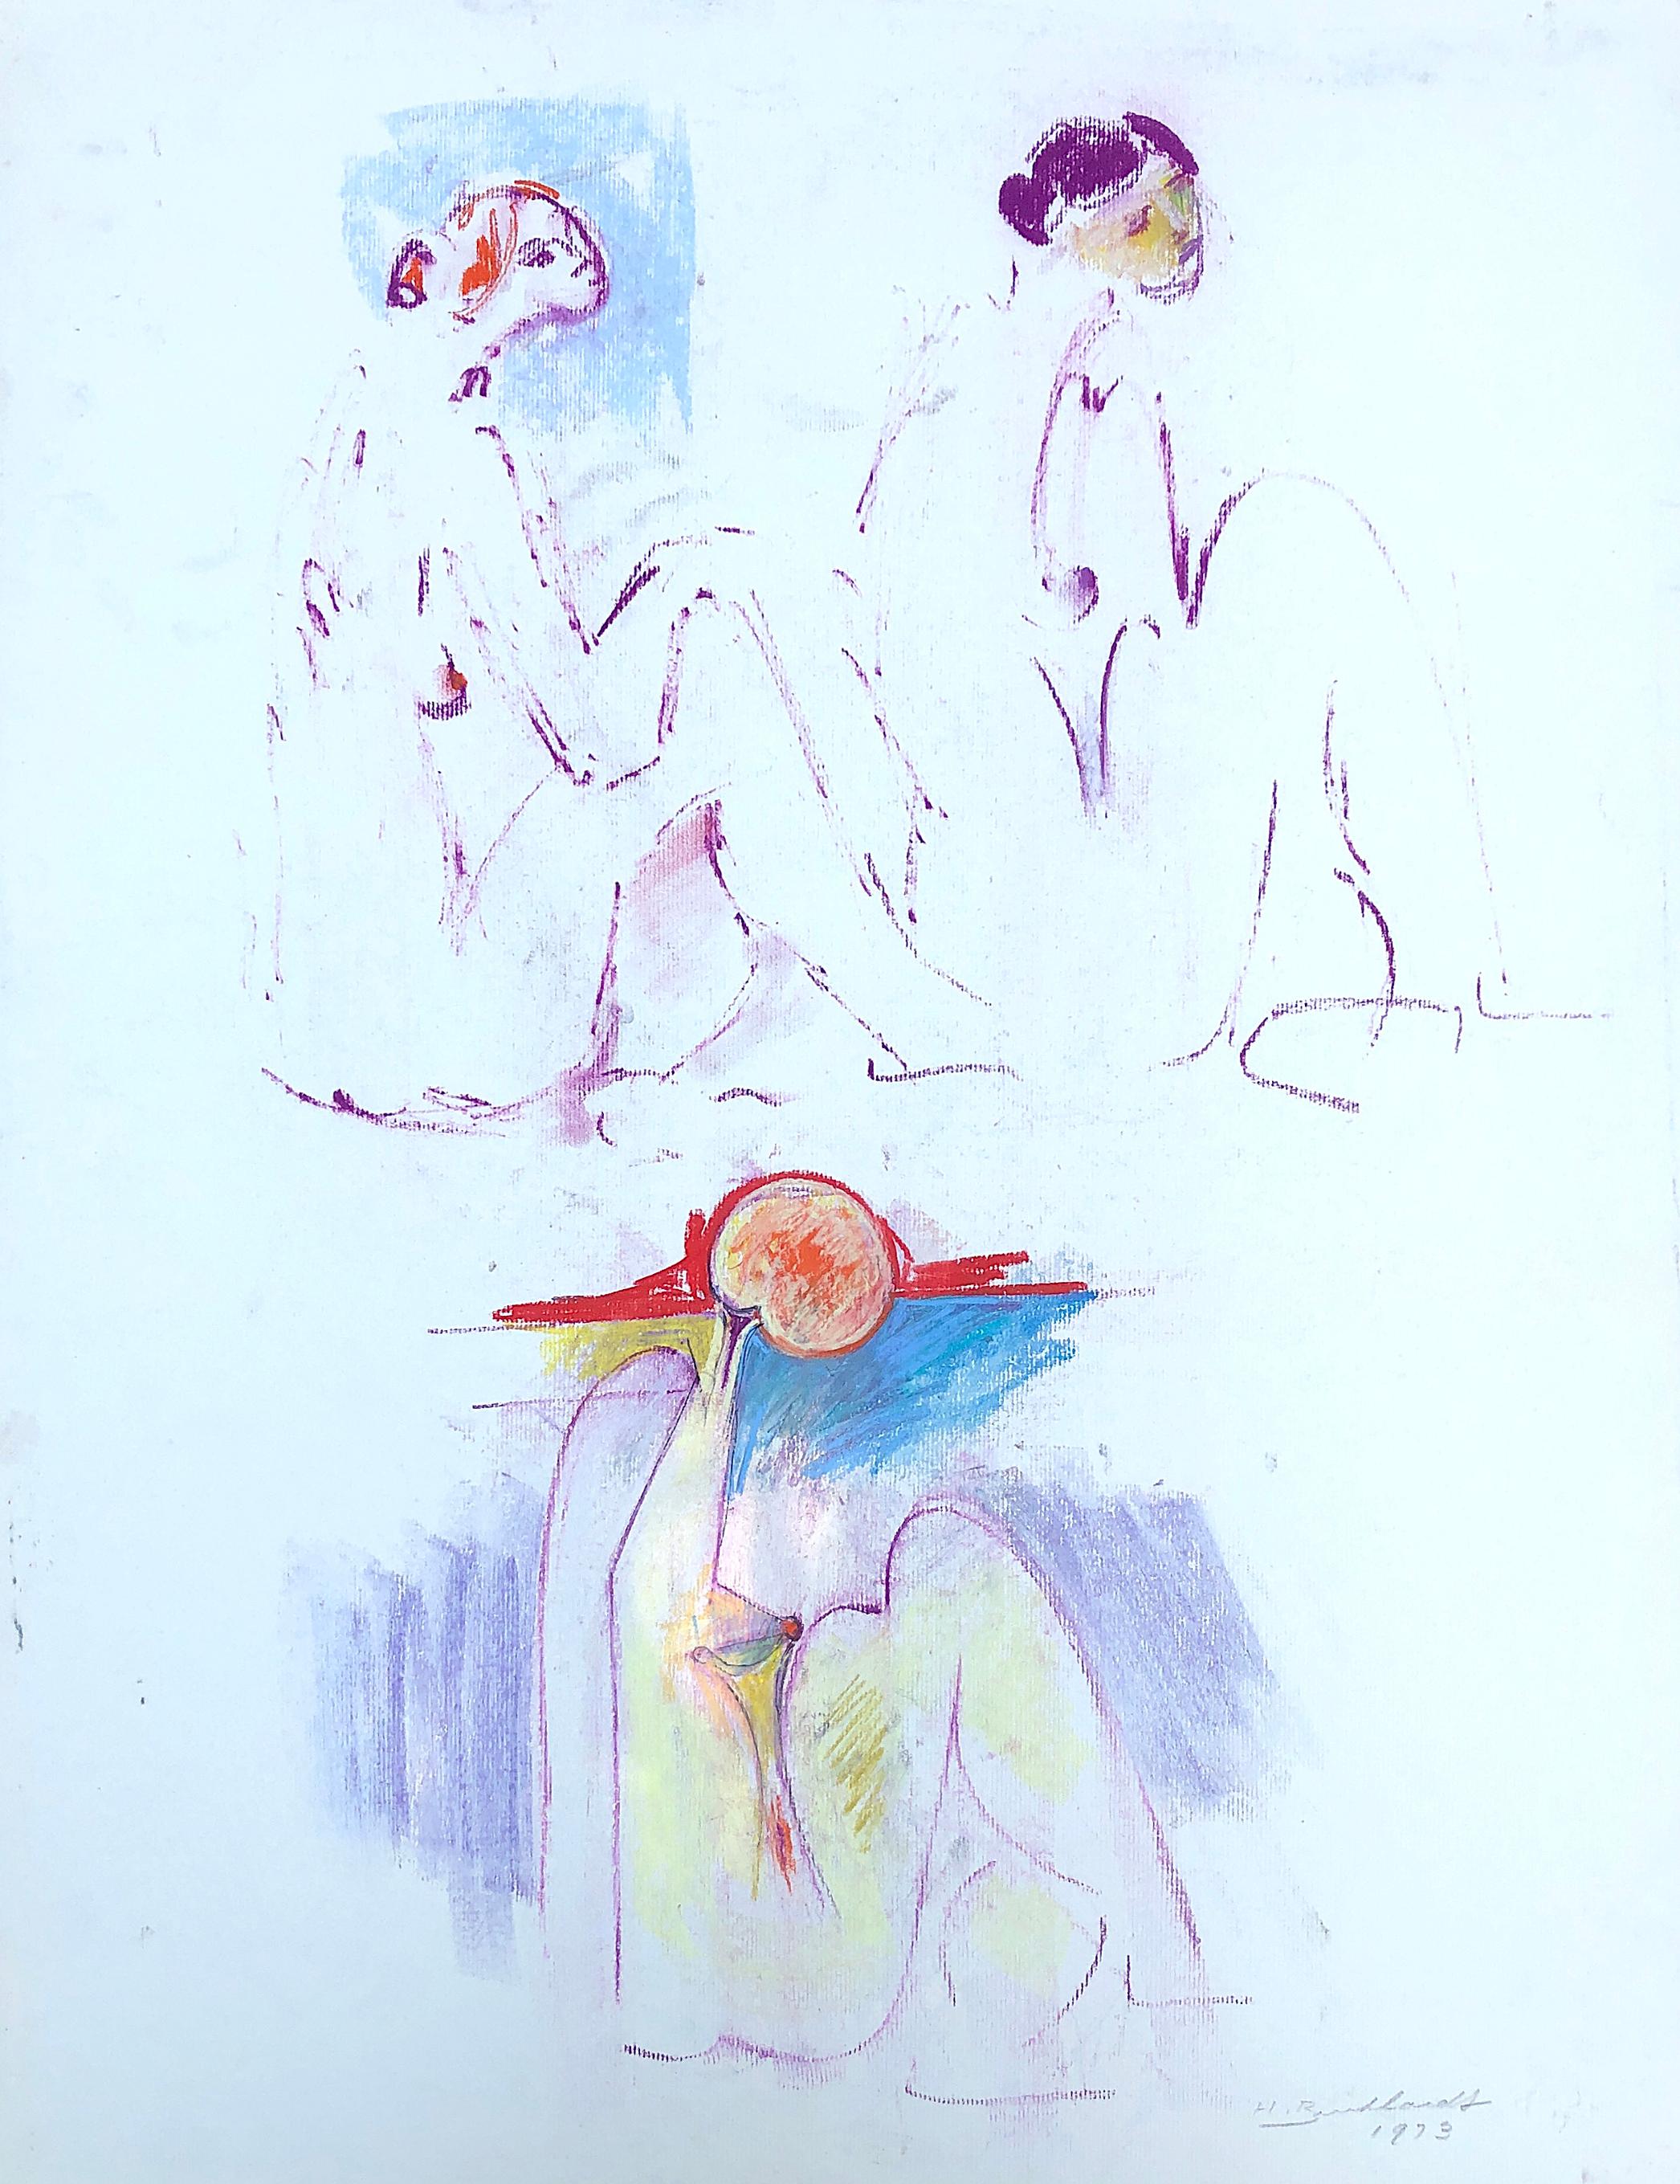 Handsigniert und datiert "H Burkhardt 1973" unten rechts. 

Provenienz: Der Künstler an seine Tochter Elsa. Durch Abstammung auf ihren Sohn.

Über diesen Künstler:
Hans Burkhardt wurde am 20. Dezember 1904 in Basel in der Schweiz geboren. Seine